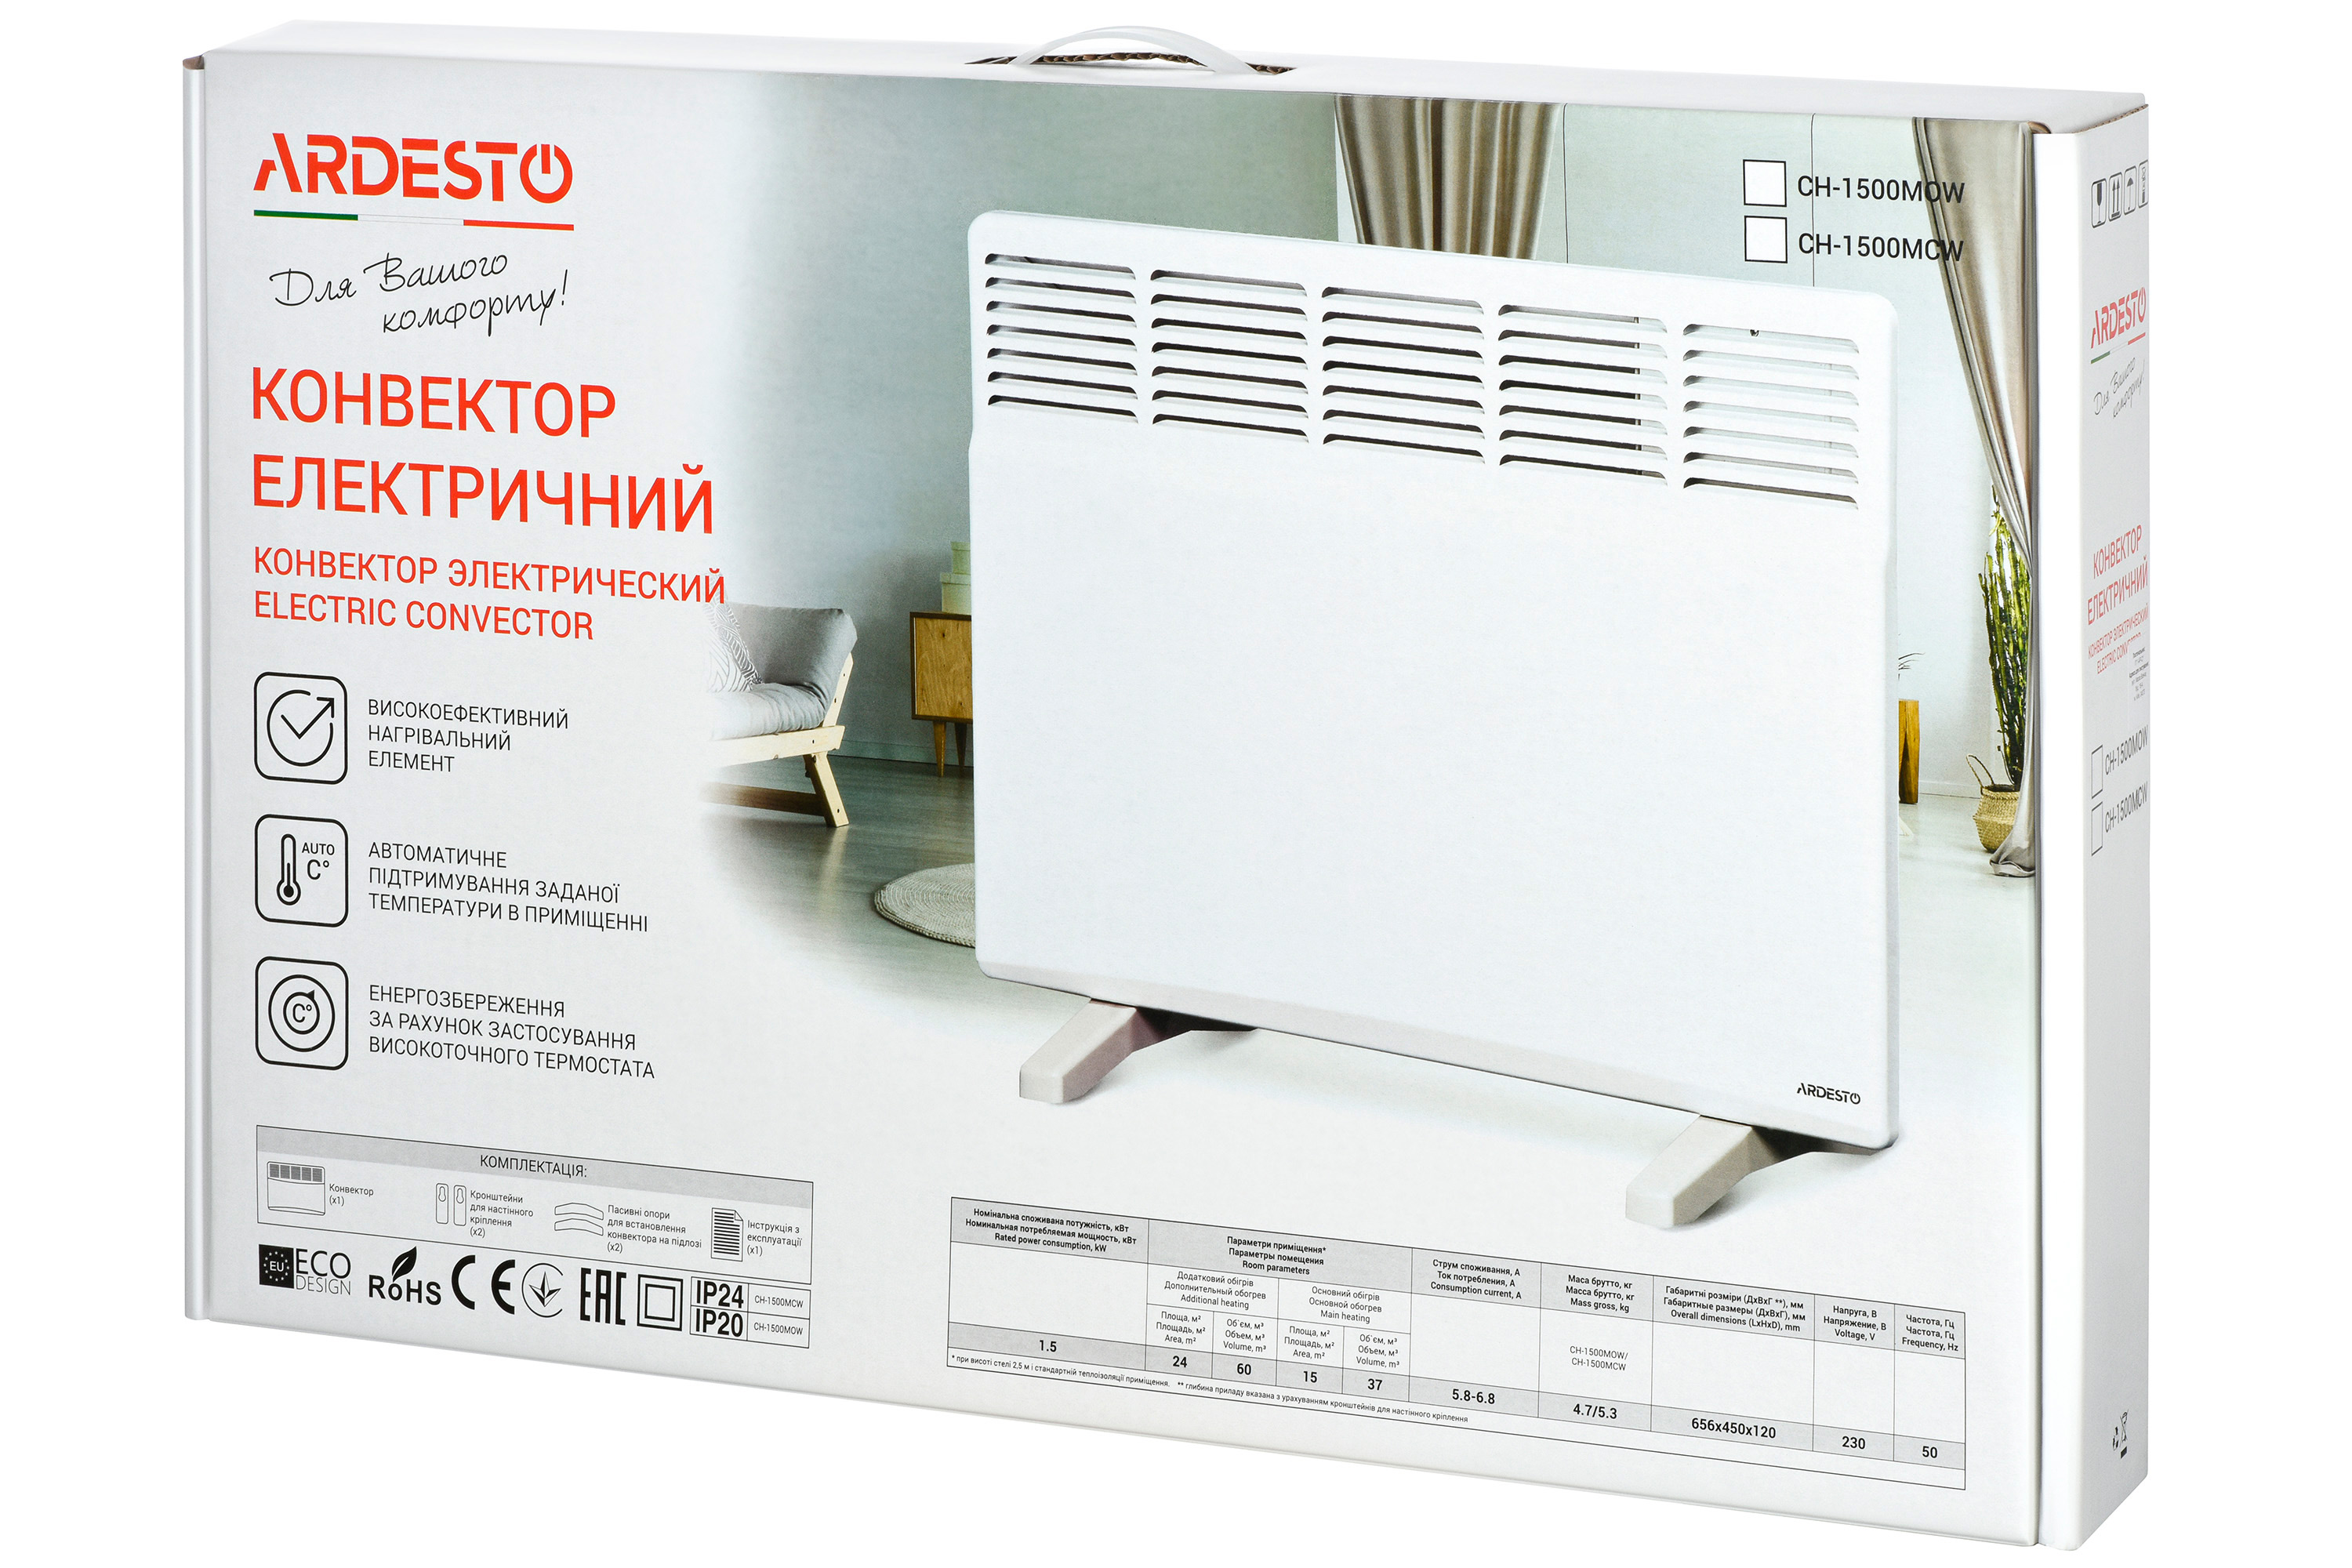 Електричний конвектор Ardesto CH-1500MCW характеристики - фотографія 7